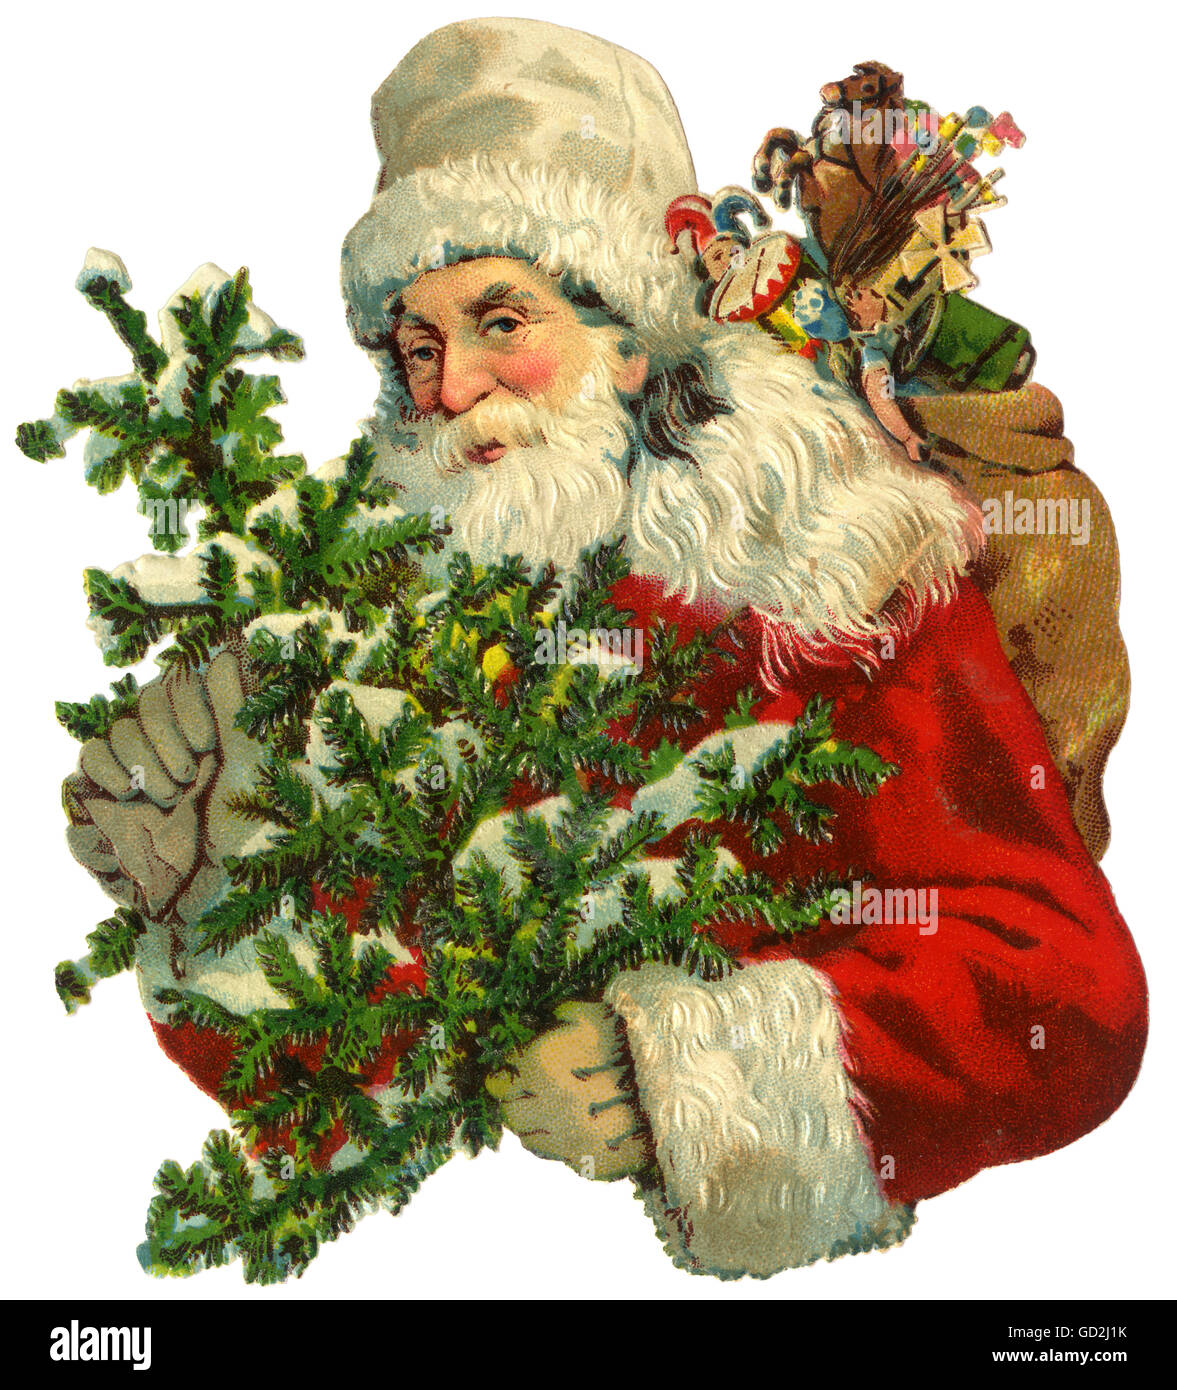 Weihnachten, Weihnachtsmann, Nikolaus, Schrottbild, Deutschland, um 1910, zusätzliche-Rechte-Clearenzen-nicht verfügbar Stockfoto